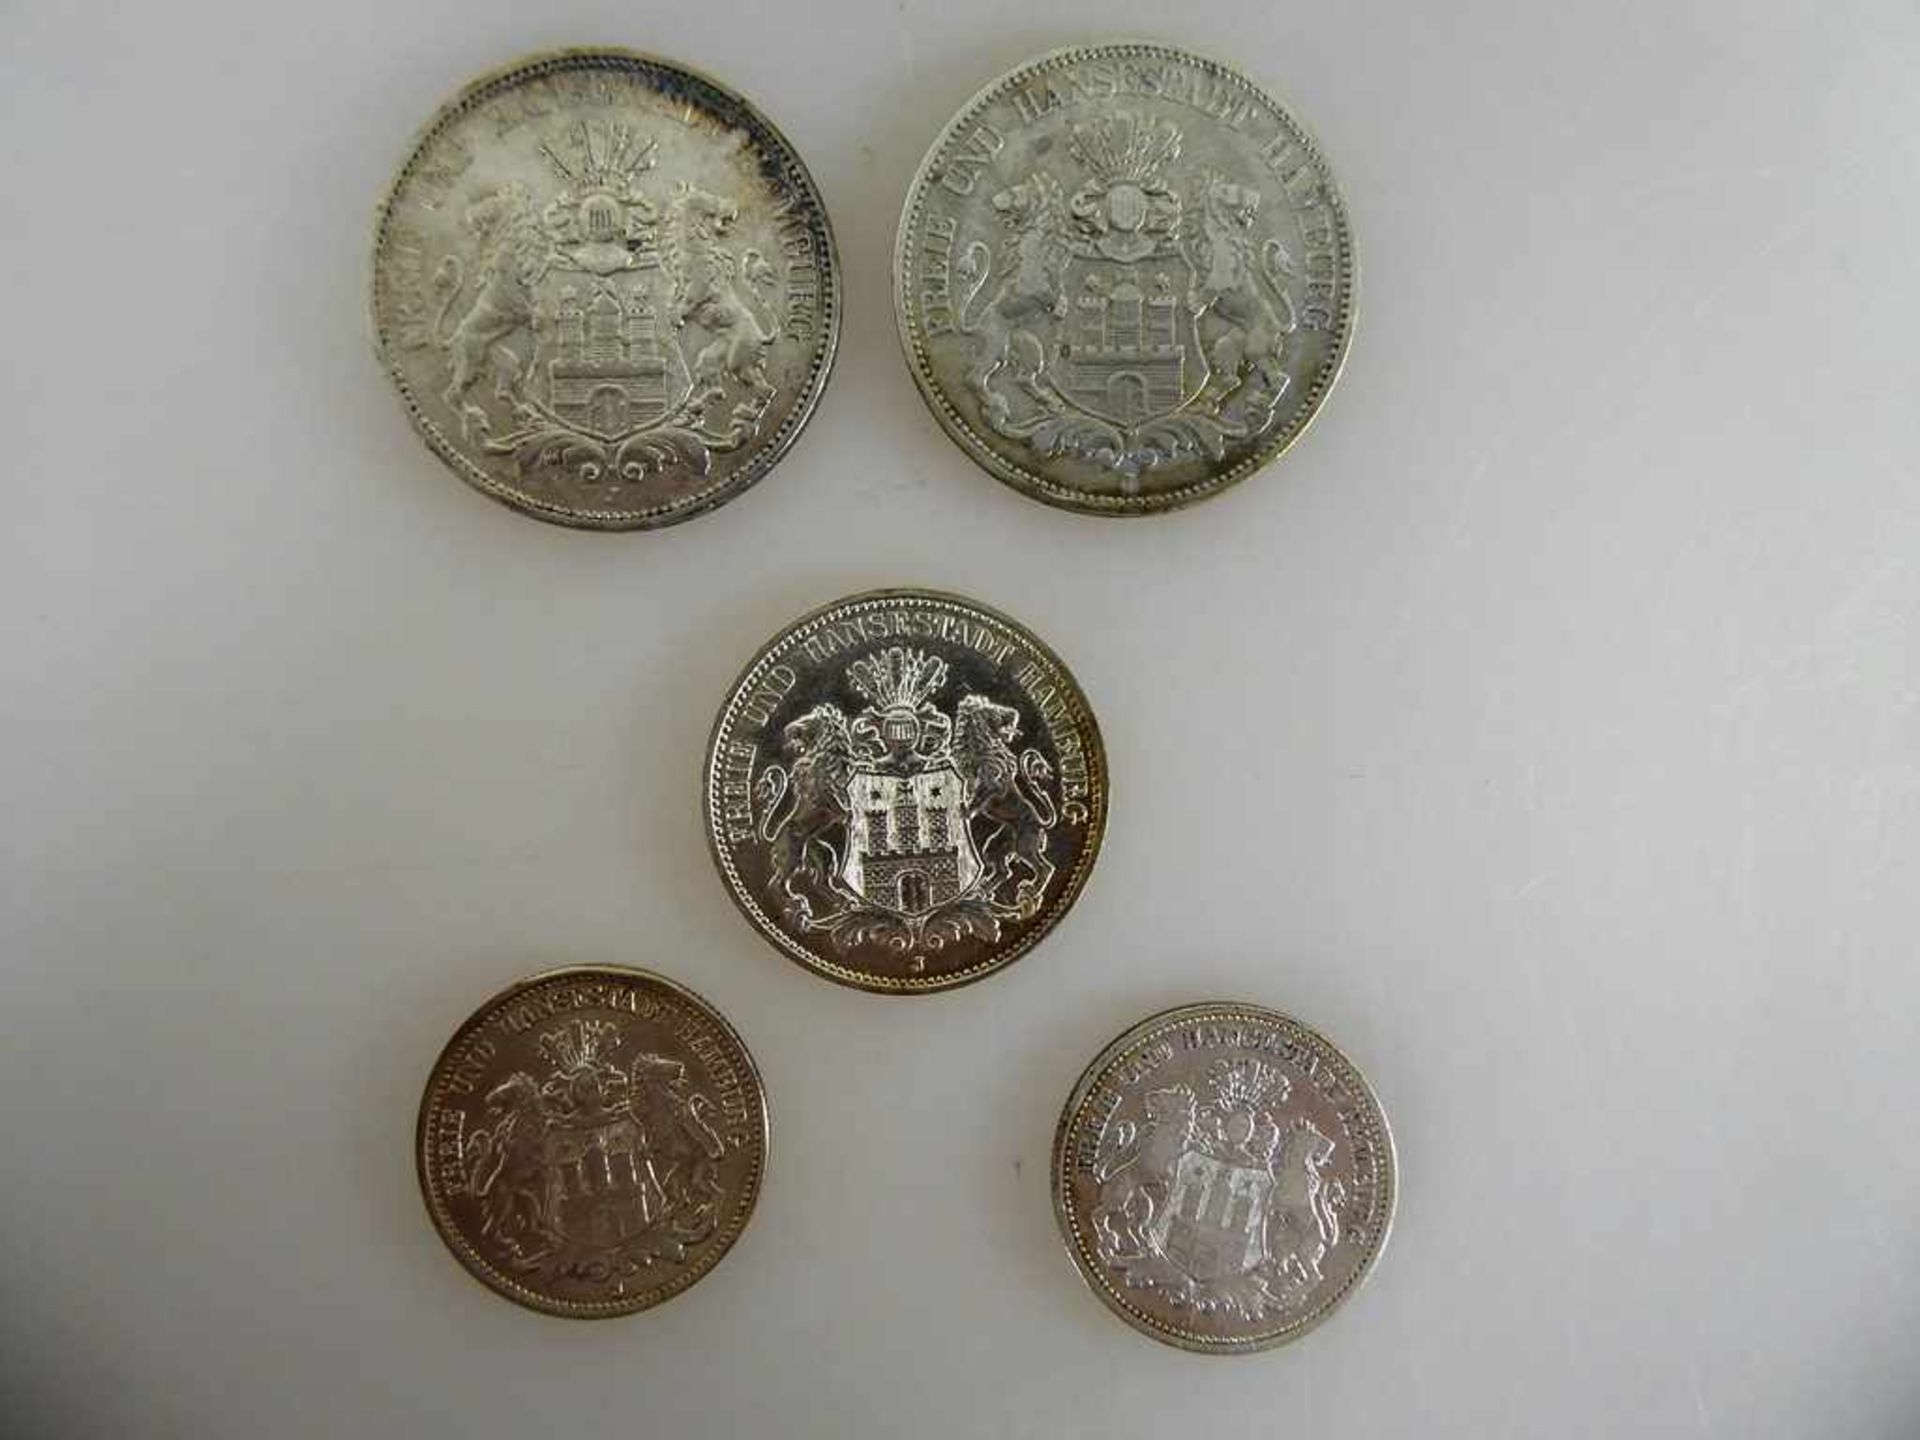 Kaiserreich - Freie Hansestadt Hamburg, 5 Silbermünzen, 2 Mark 1876 s/ss Jaeger 61, 5 Mark 1876 s/ss